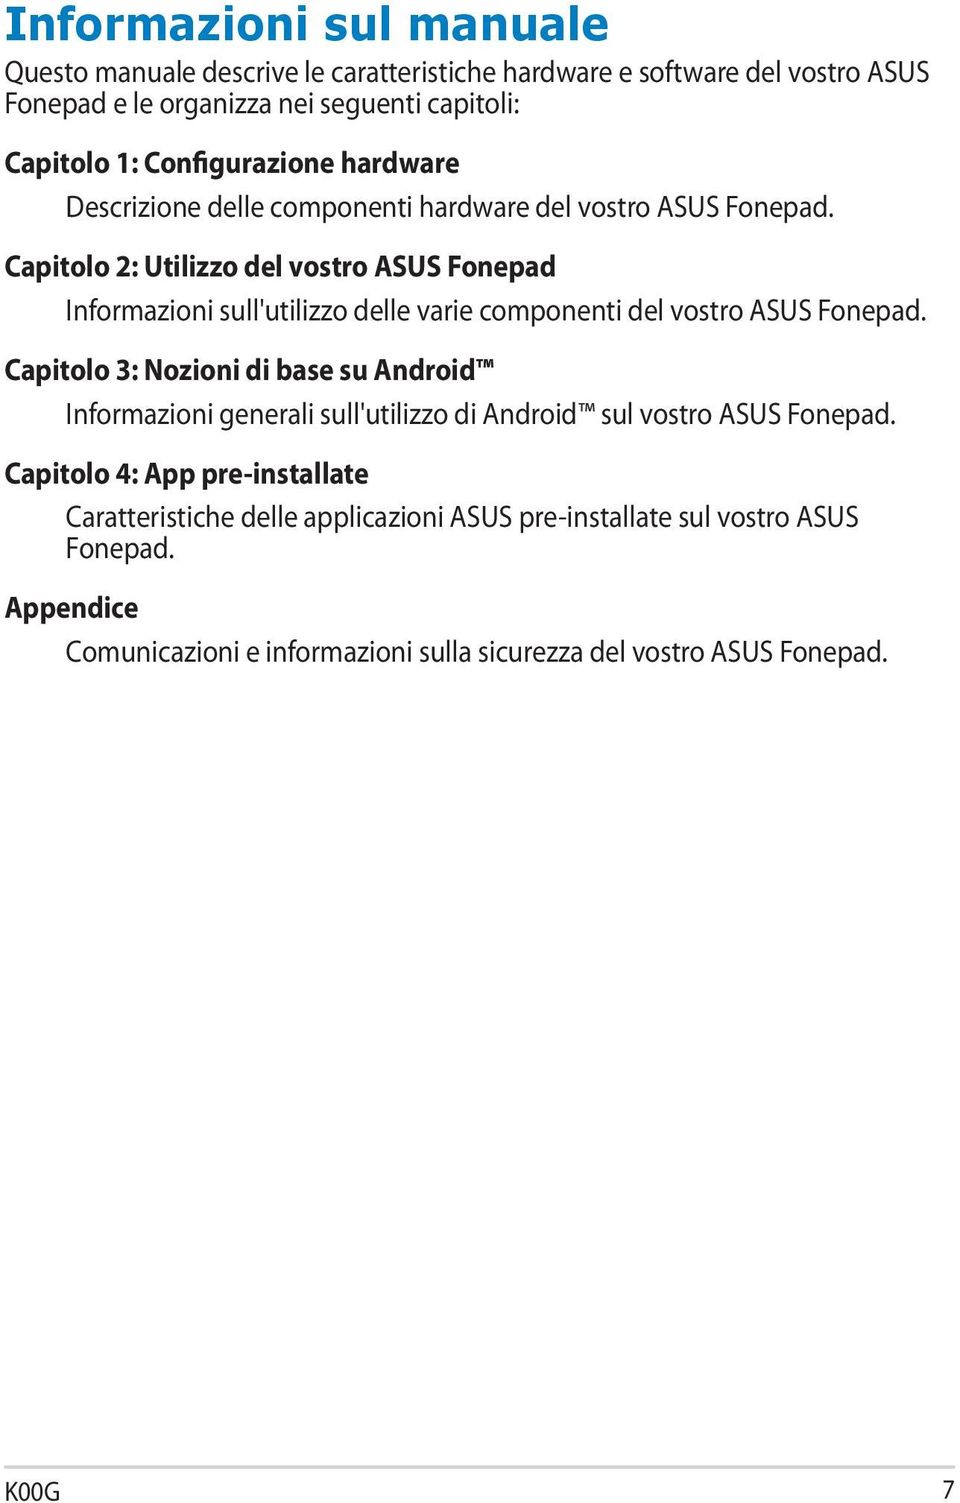 Capitolo 2: Utilizzo del vostro ASUS Fonepad Informazioni sull'utilizzo delle varie componenti del vostro ASUS Fonepad.